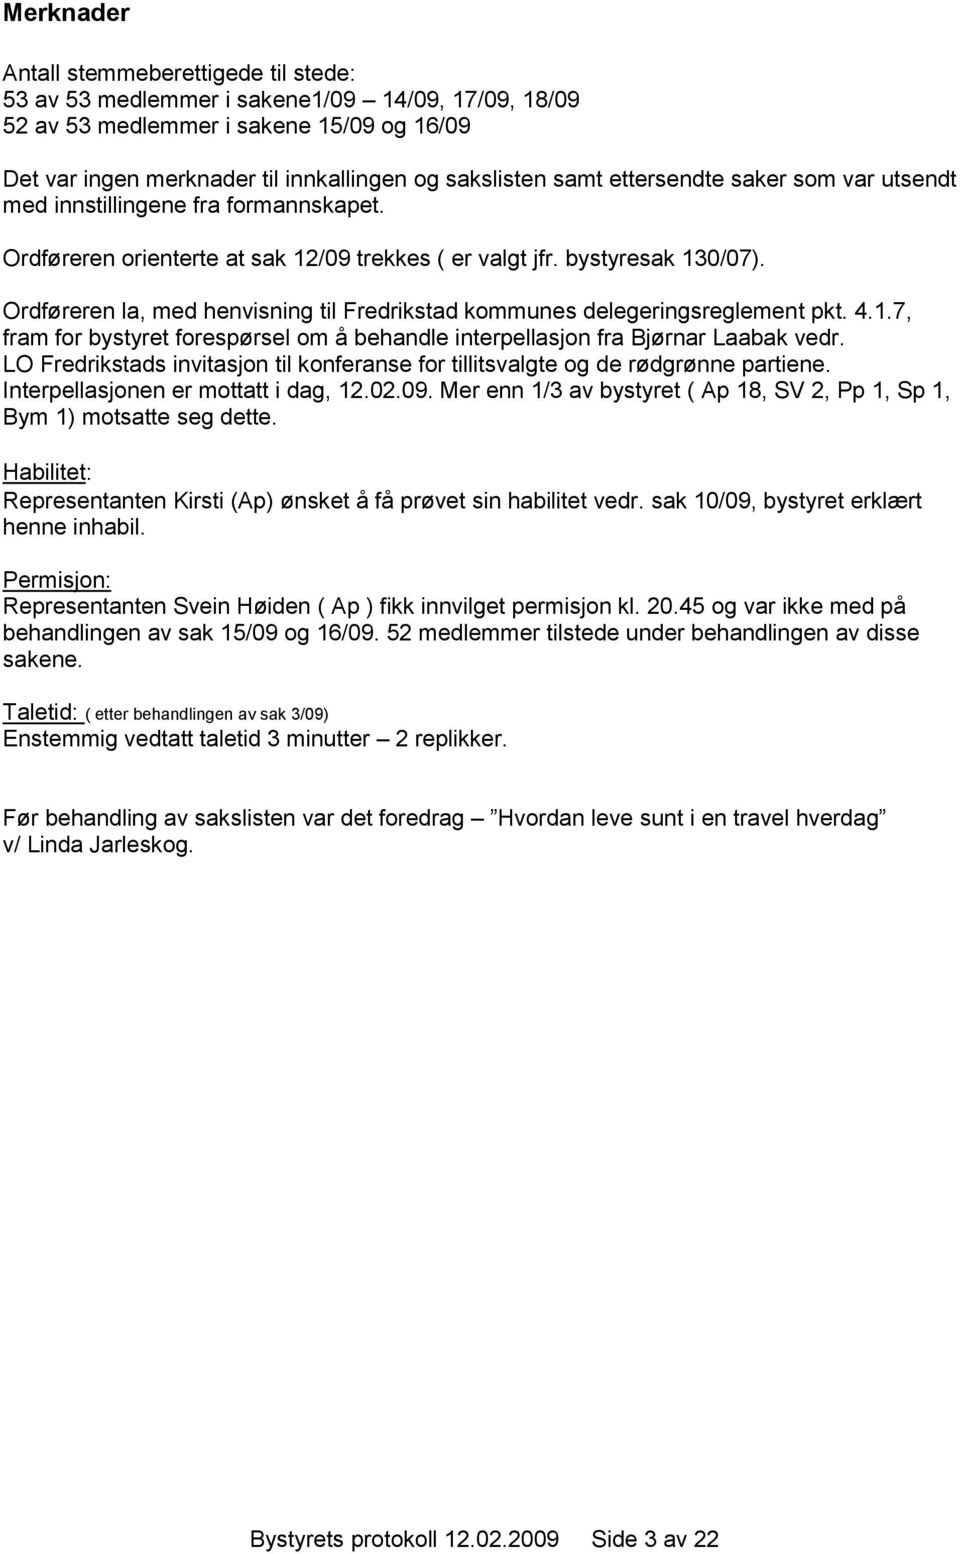 Ordføreren la, med henvisning til Fredrikstad kommunes delegeringsreglement pkt. 4.1.7, fram for bystyret forespørsel om å behandle interpellasjon fra Bjørnar Laabak vedr.